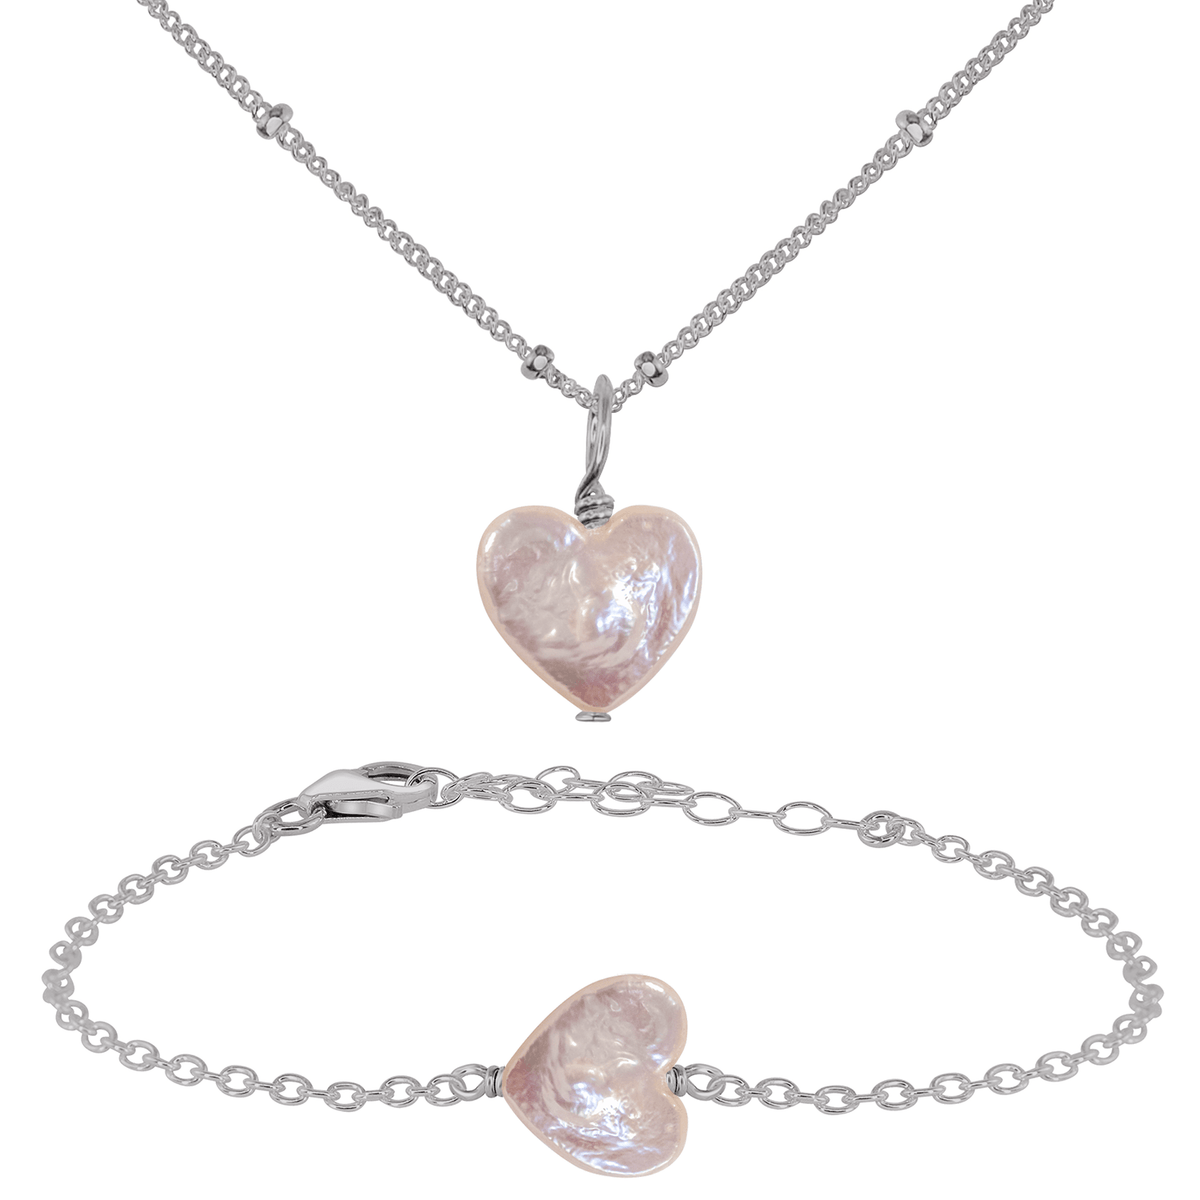 Freshwater Pearl Heart Jewellery Set - Freshwater Pearl Heart Jewellery Set - Stainless Steel / Satellite / Necklace & Bracelet - Luna Tide Handmade Crystal Jewellery